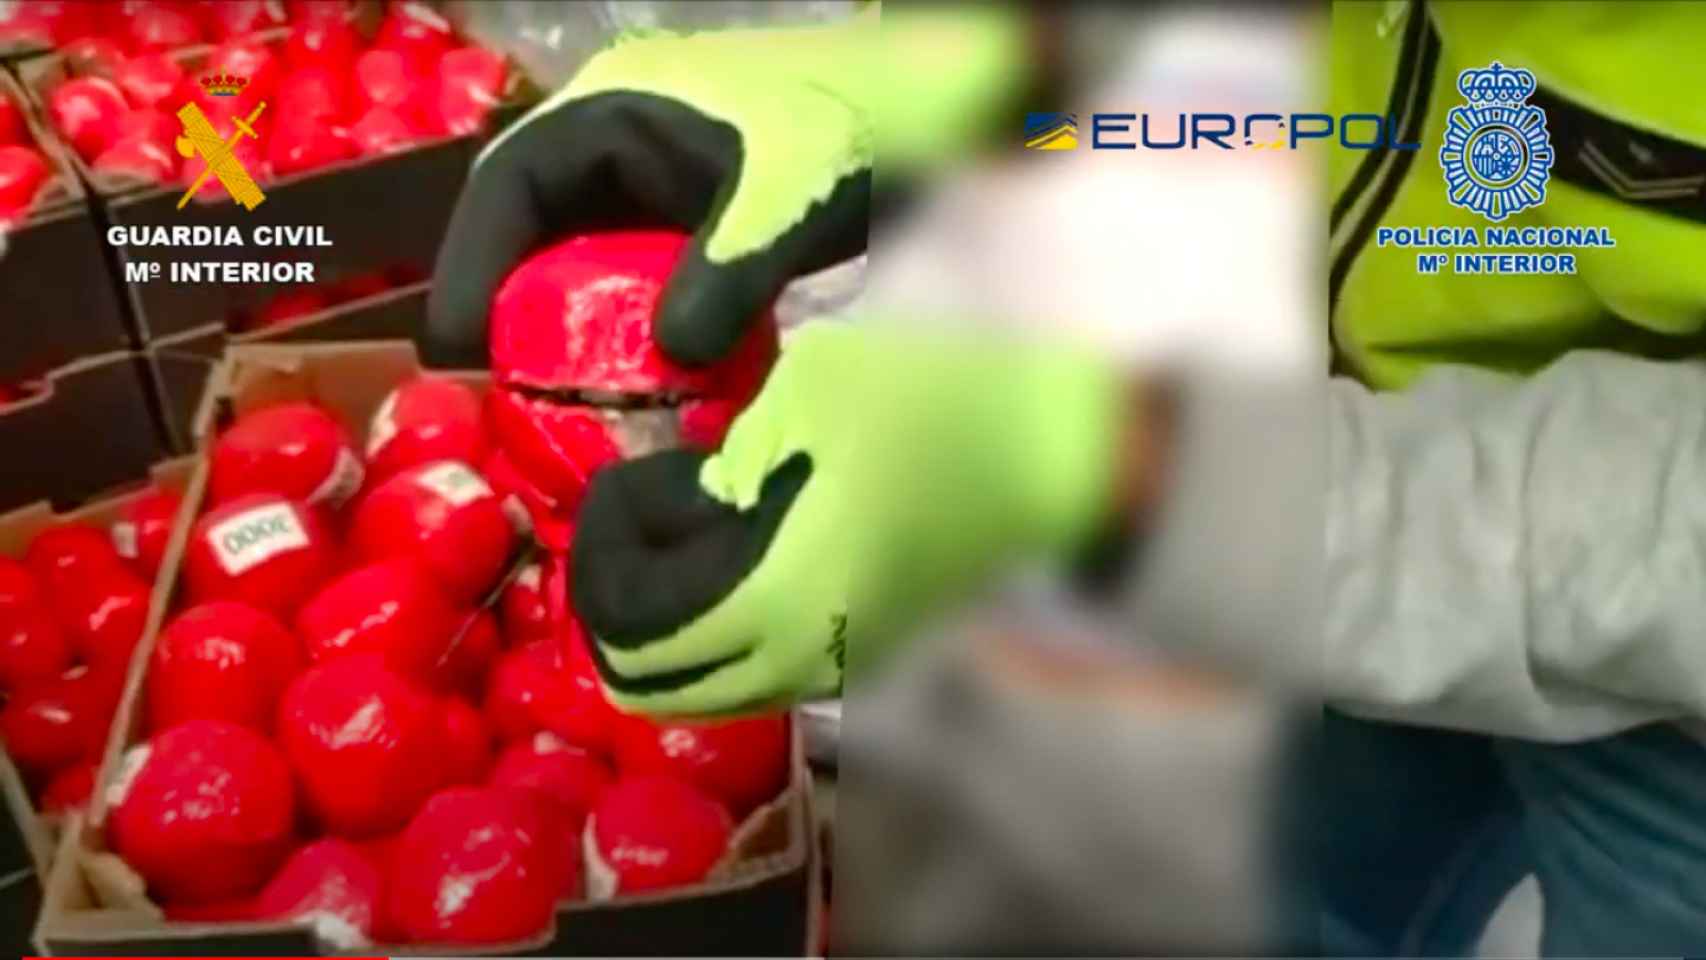 Cajas de falsos tomates en las que viajaba la droga.